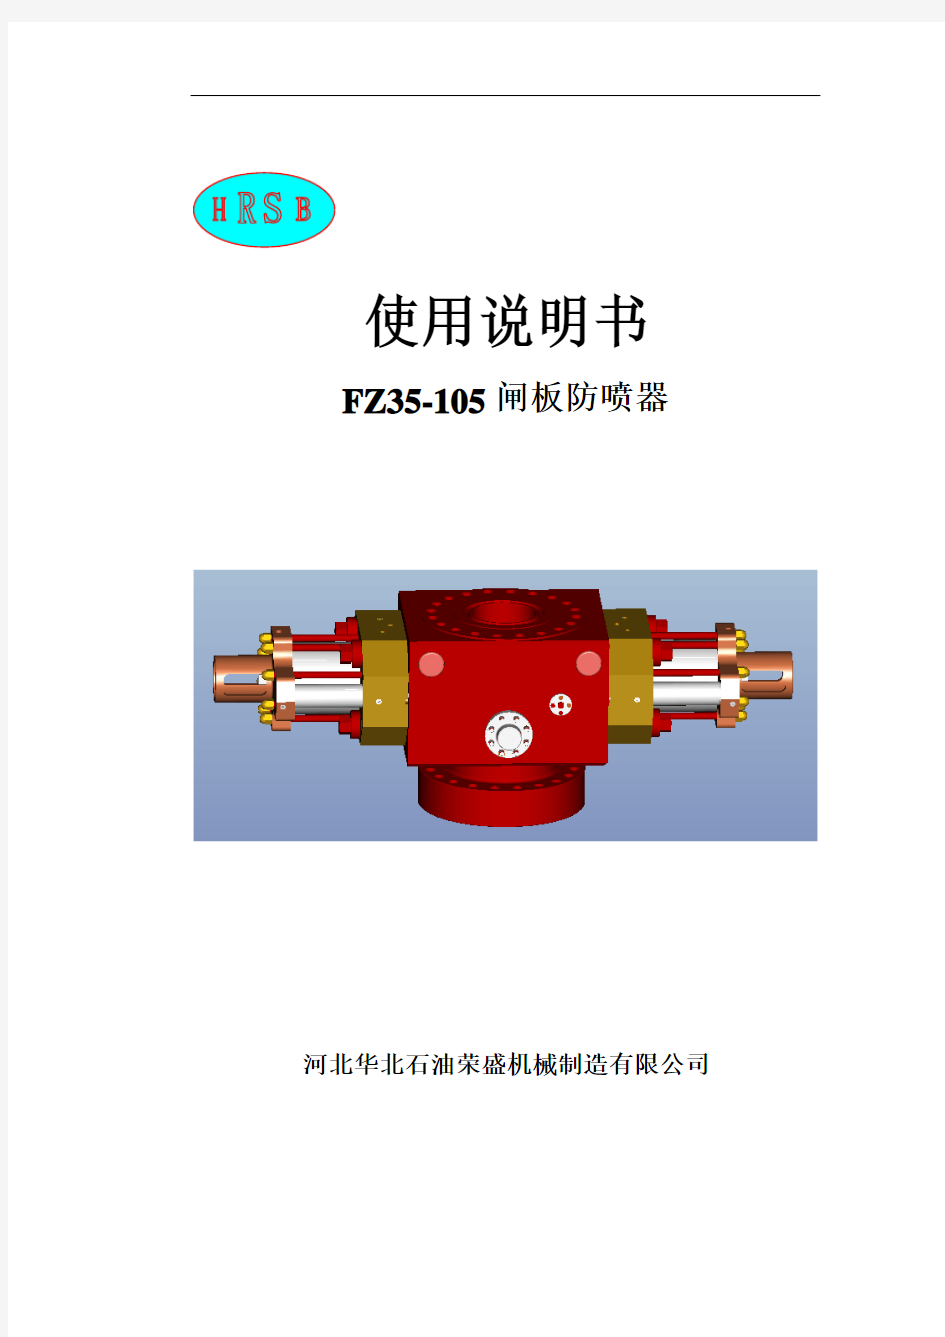 FZ35-105闸板防喷器